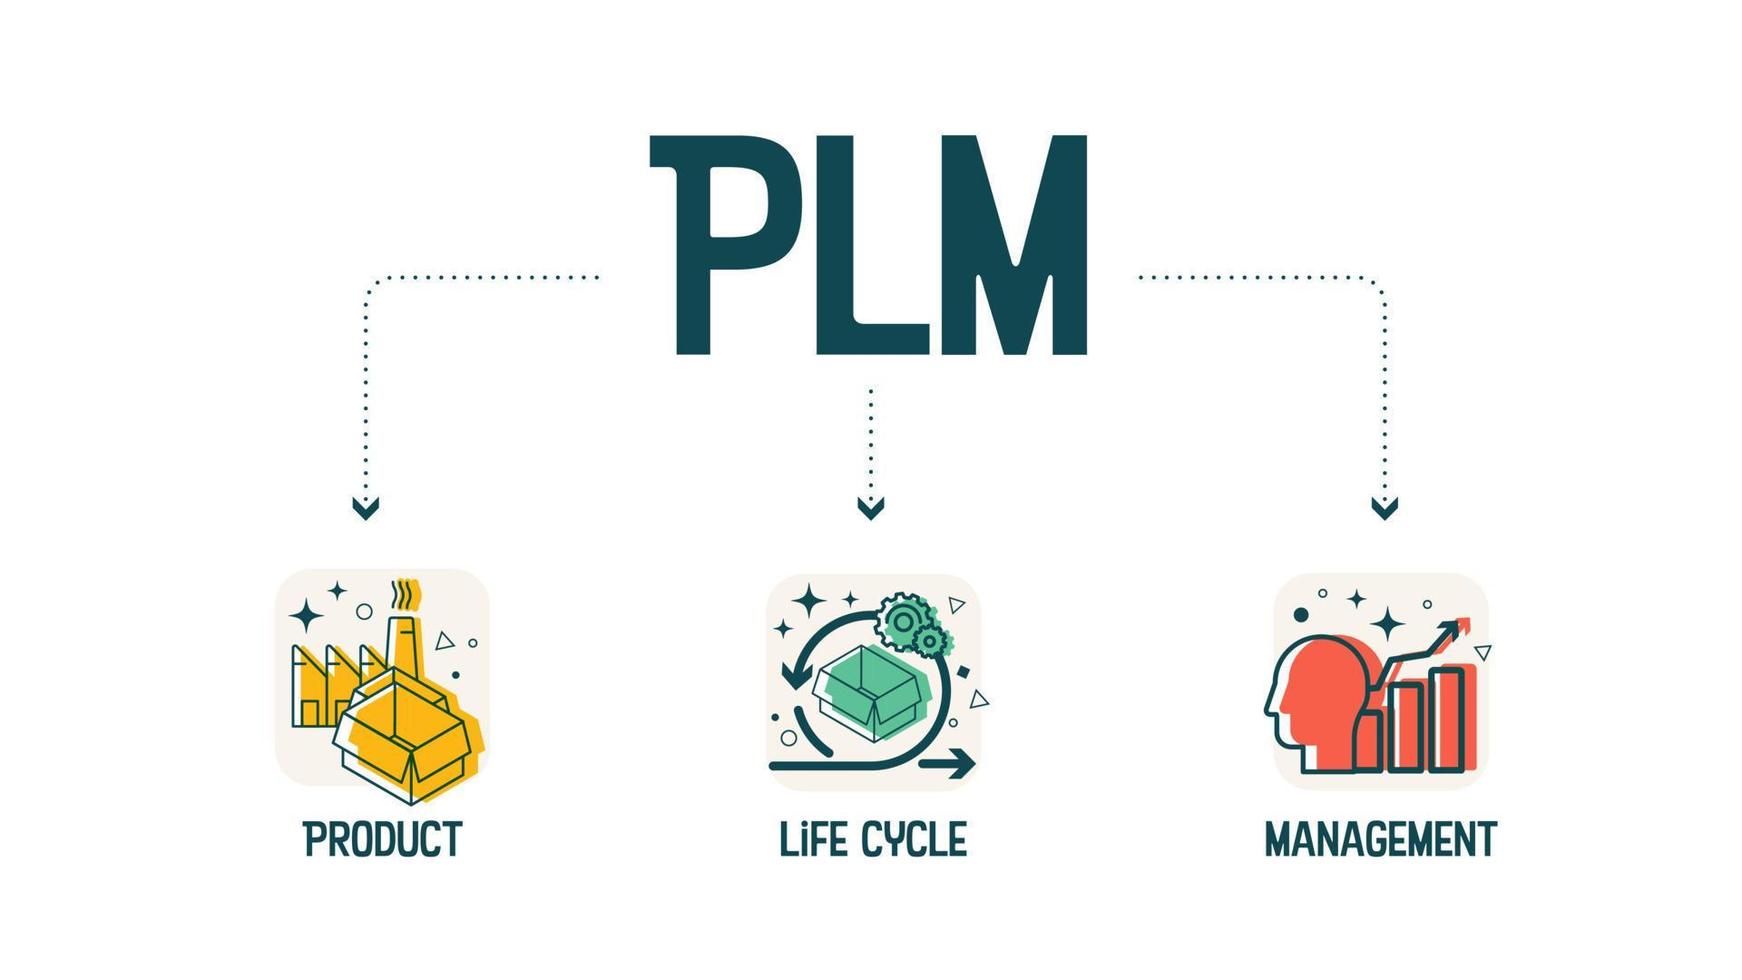 der vektor infografik plm - akronyme für das produktlebenszyklusmanagement ist ein prozess zur verwaltung des gesamten lebenszyklus eines produkts von der konzeption über das technische design und die herstellung bis hin zum service